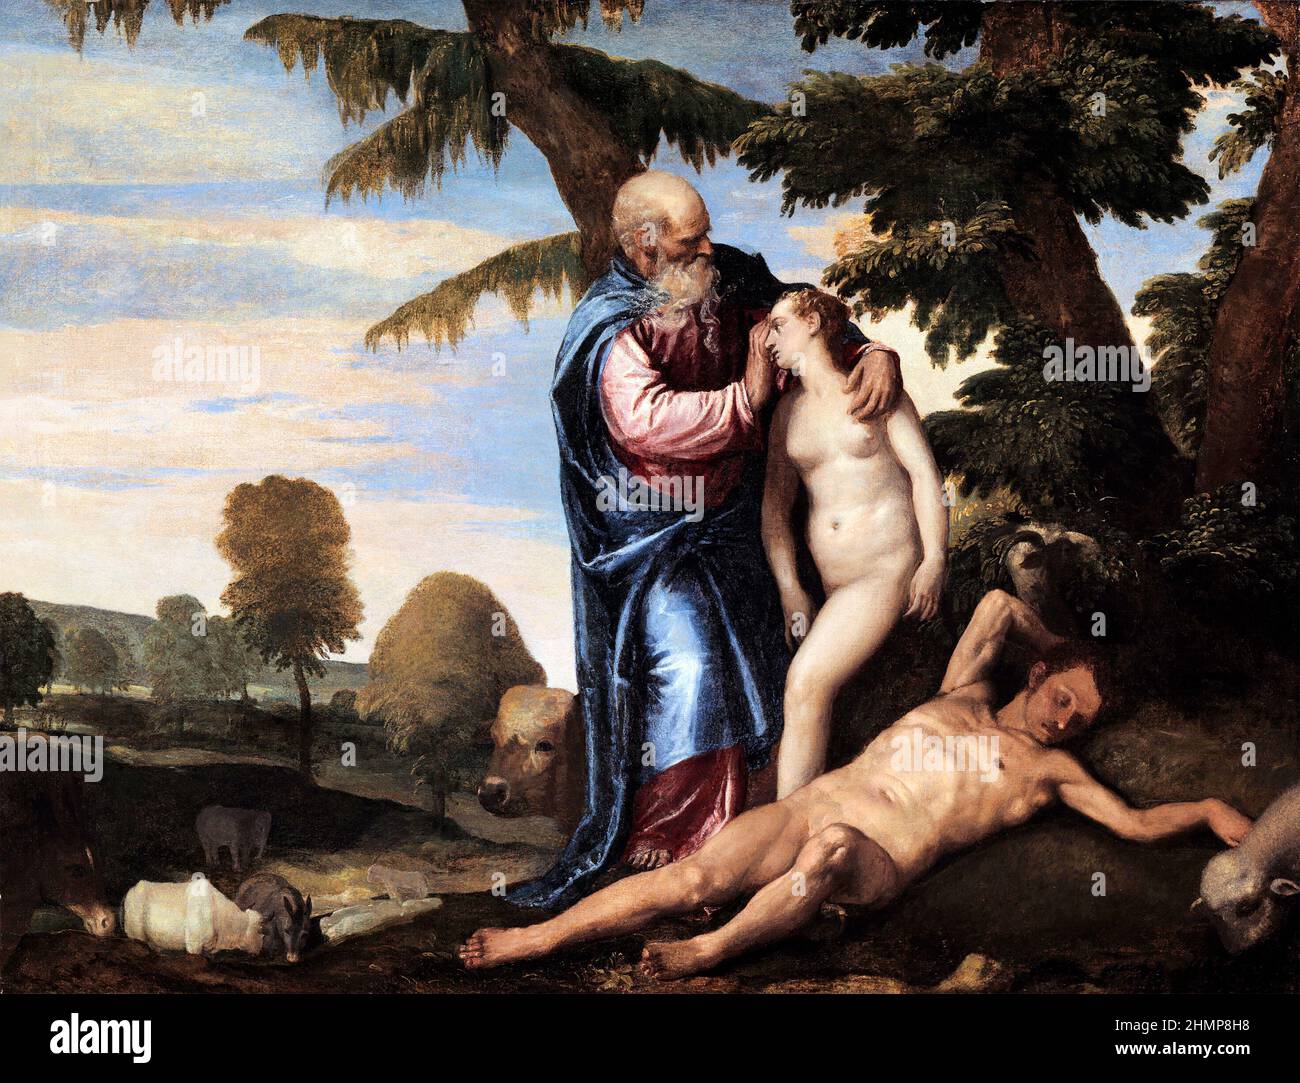 La création d'Eve par Paolo Veronese (Paolo Caliari : 1528-1588), huile sur toile, c. 1570-80 Banque D'Images